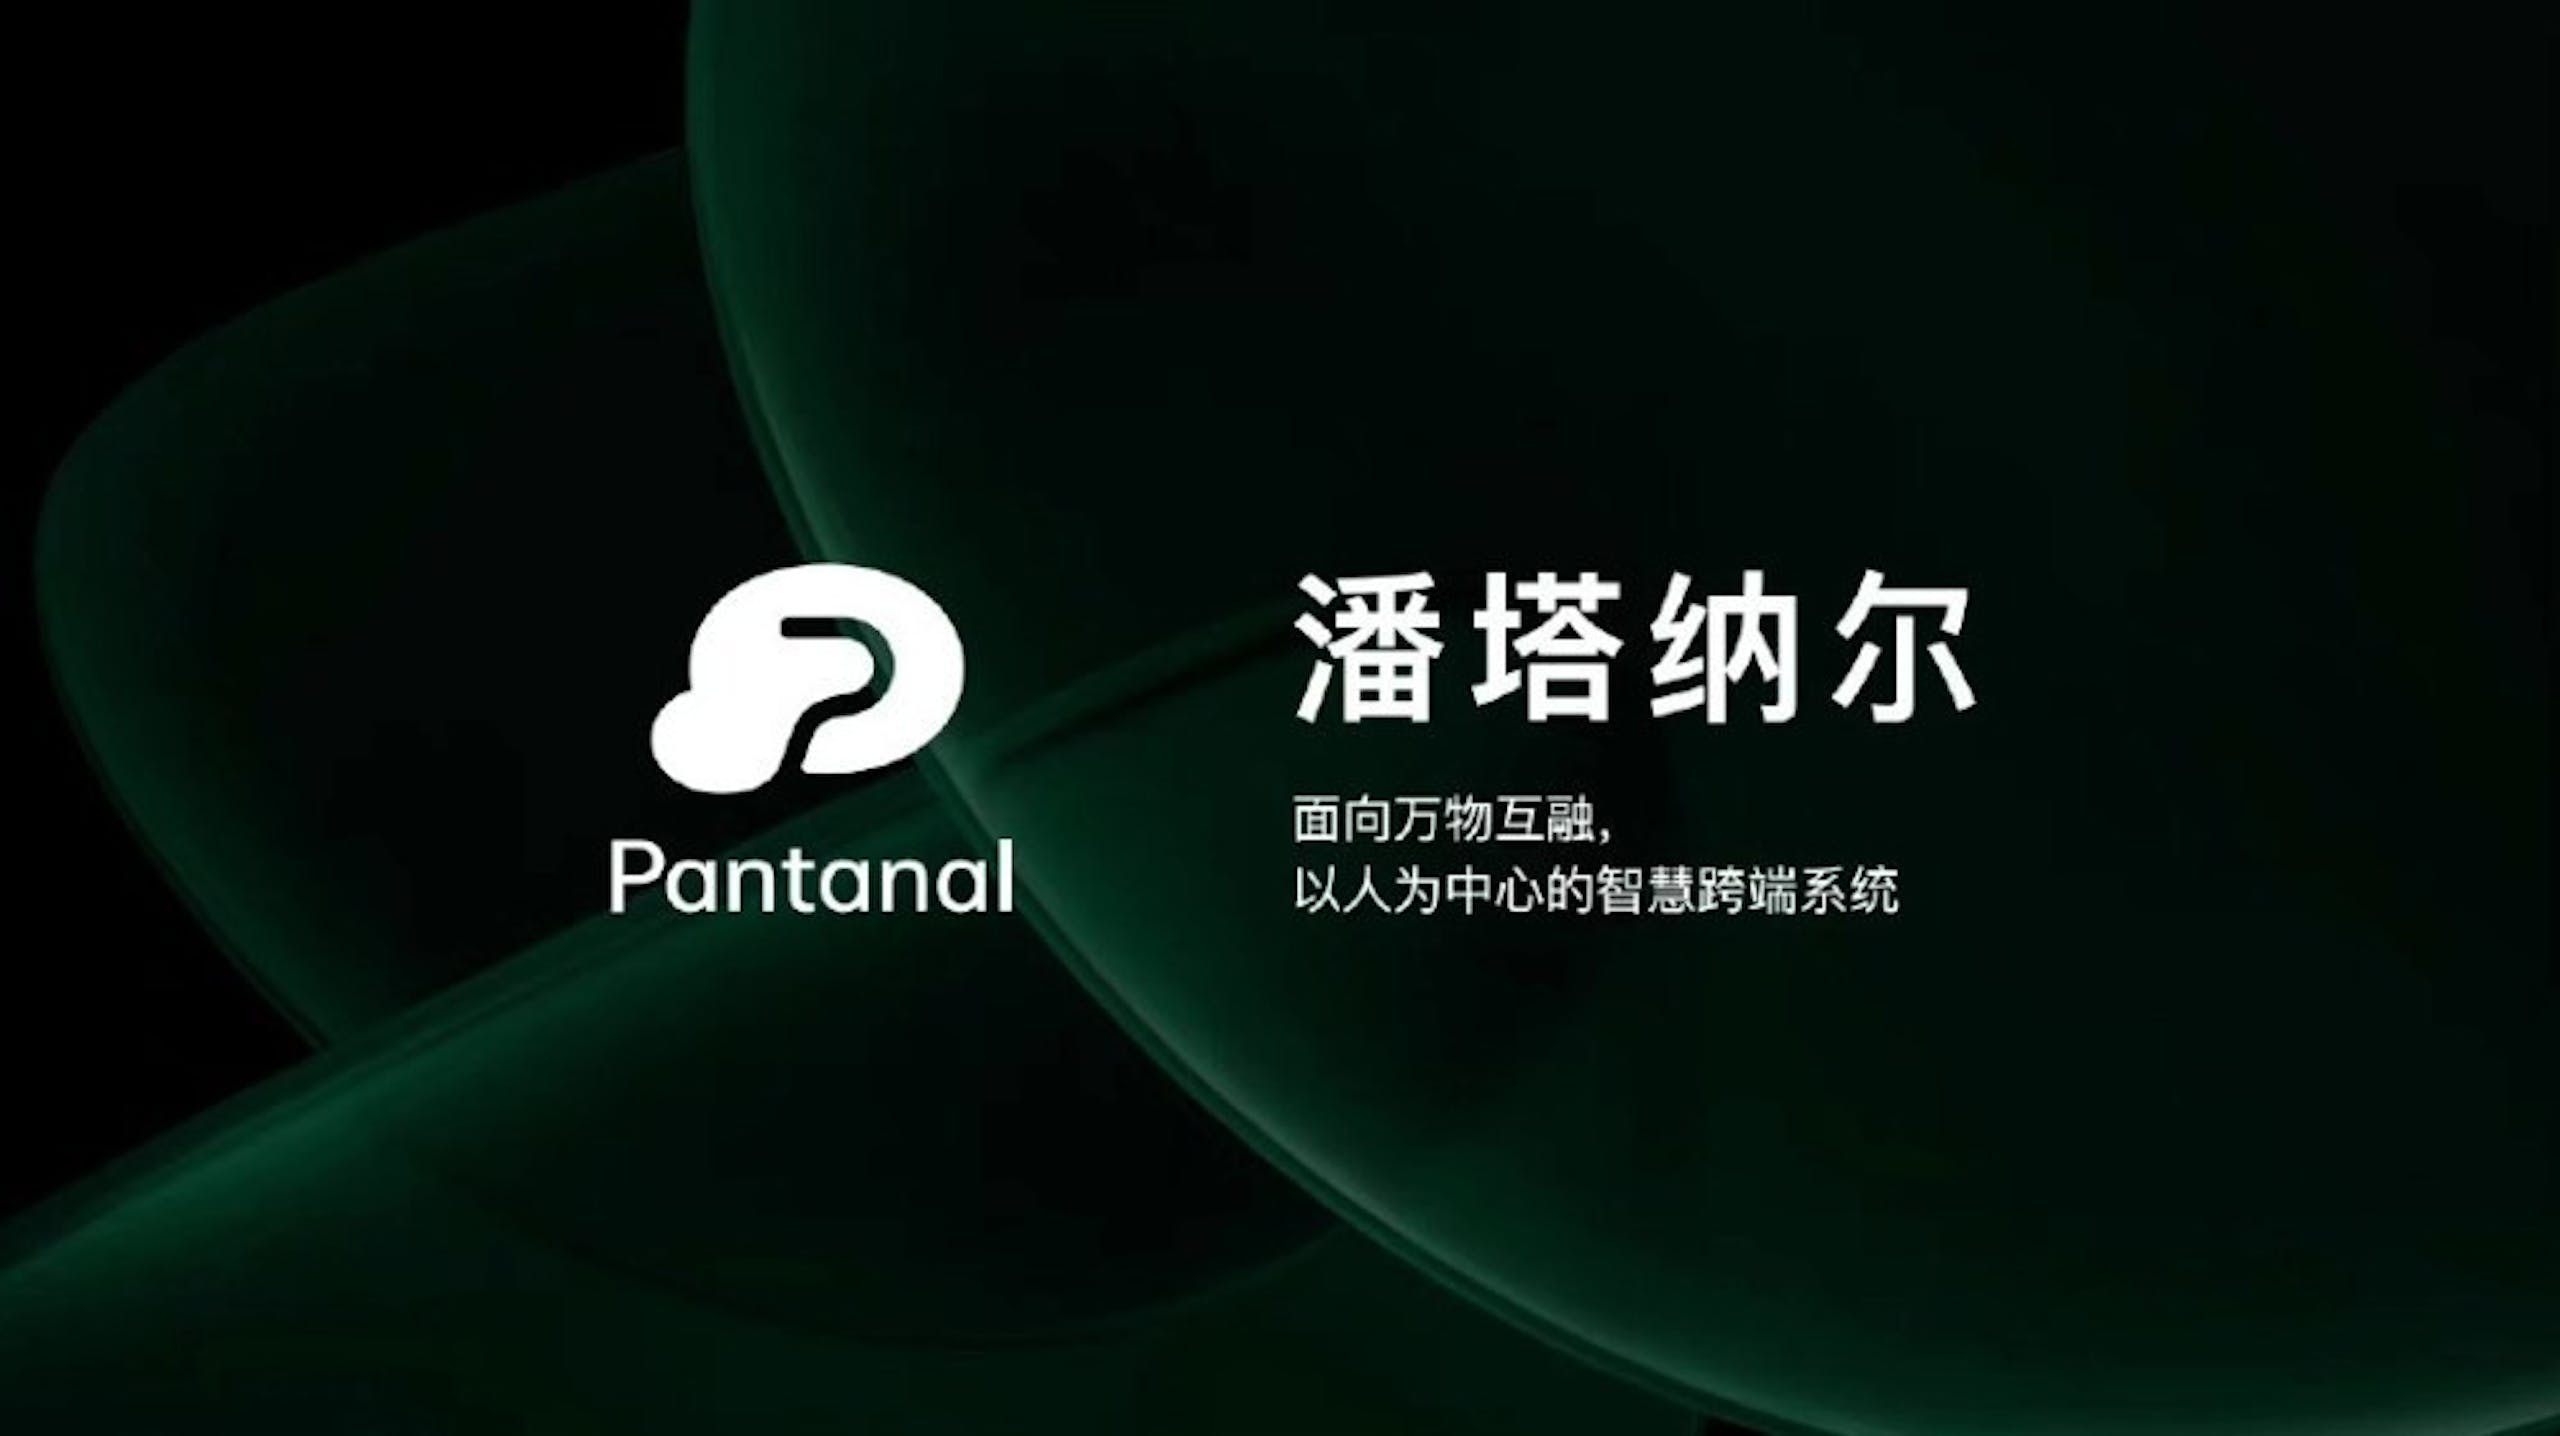 照片中提到了2、Pantanal、潘塔纳尔，跟Adobe公司有關，包含了Oppo、Oppo、彩色操作系統、移動電話、Oppo